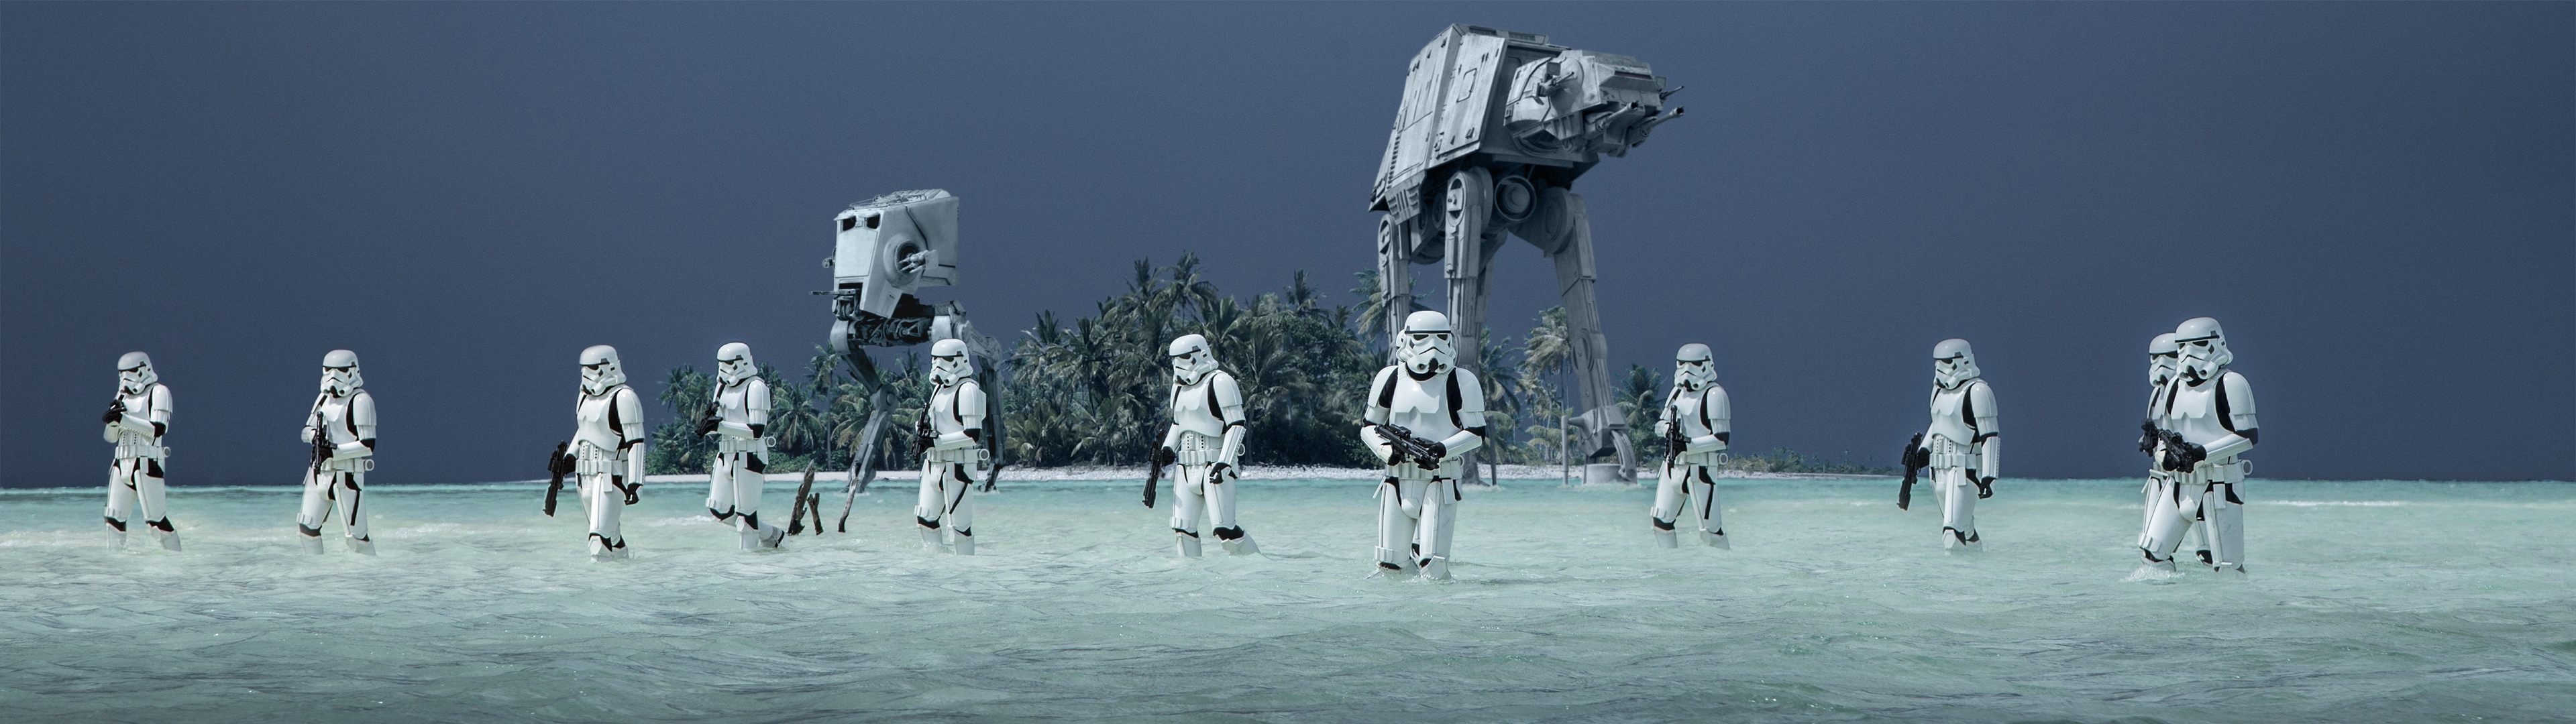 Star Wars Rogue One A Star Wars Story Storm Troopers AT AT Walker AT ST Walker AT ST AT AT Beach Wat 3840x1080